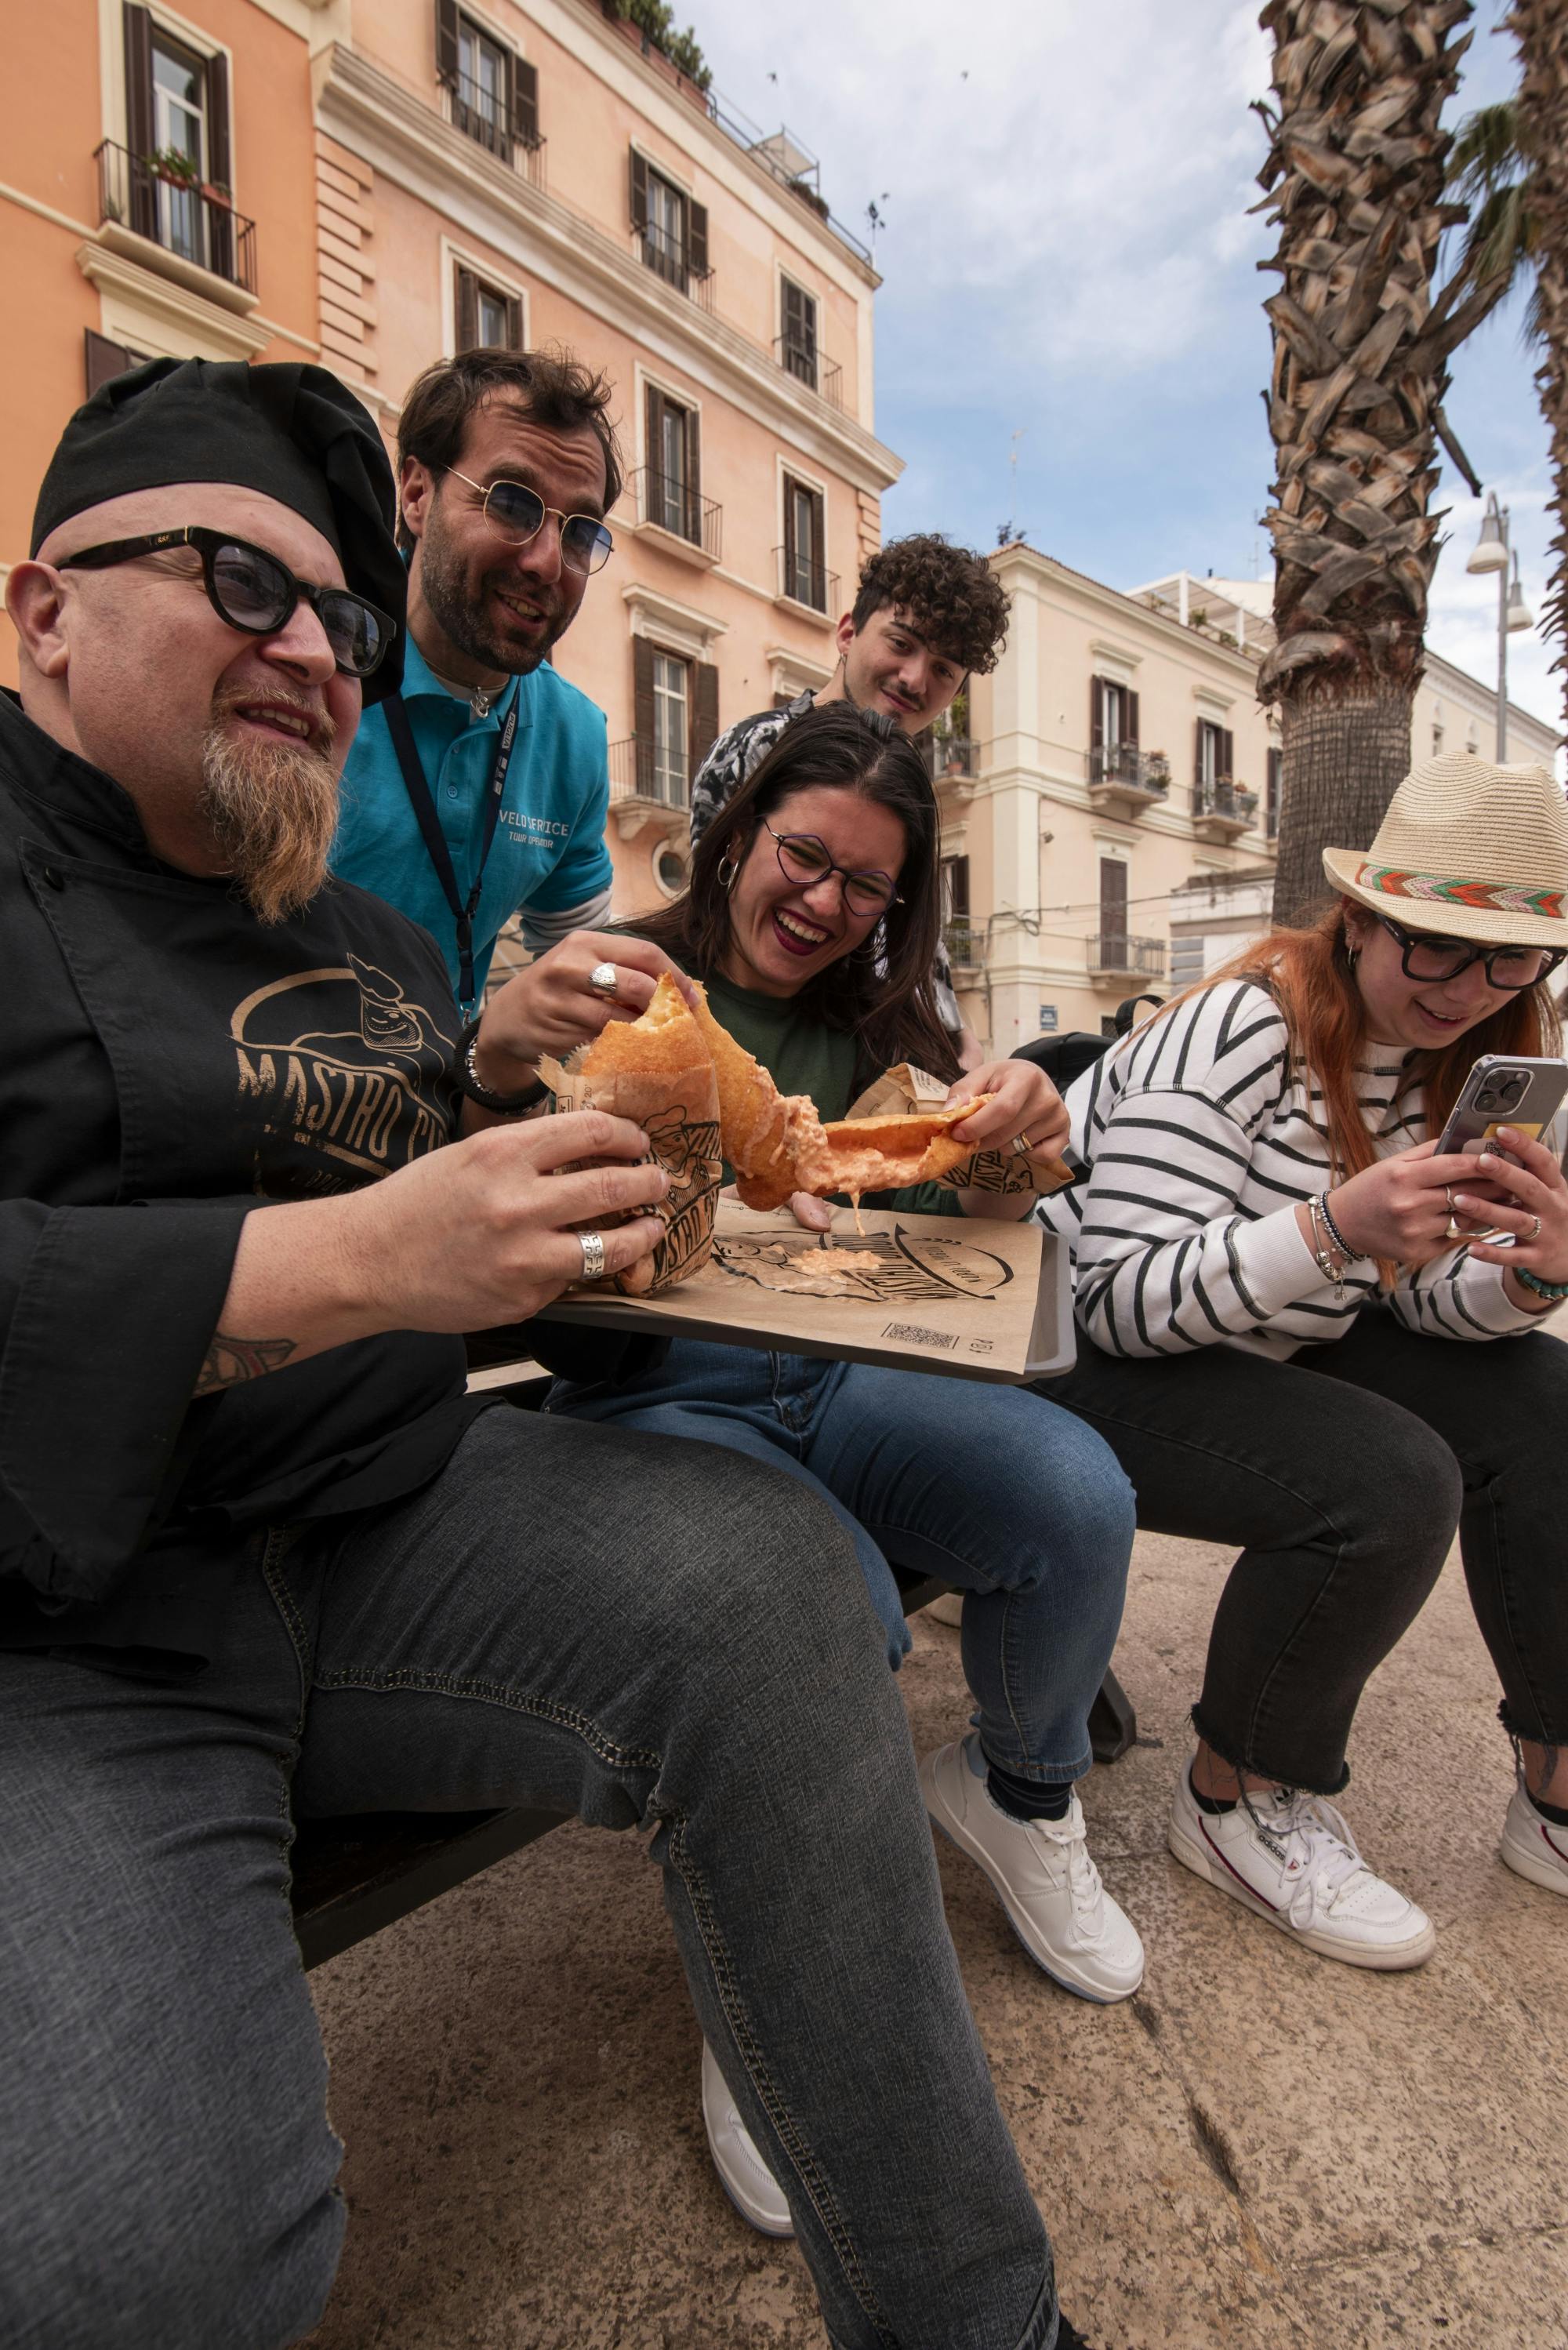 Wycieczka piesza po ulicy Bari z jedzeniem